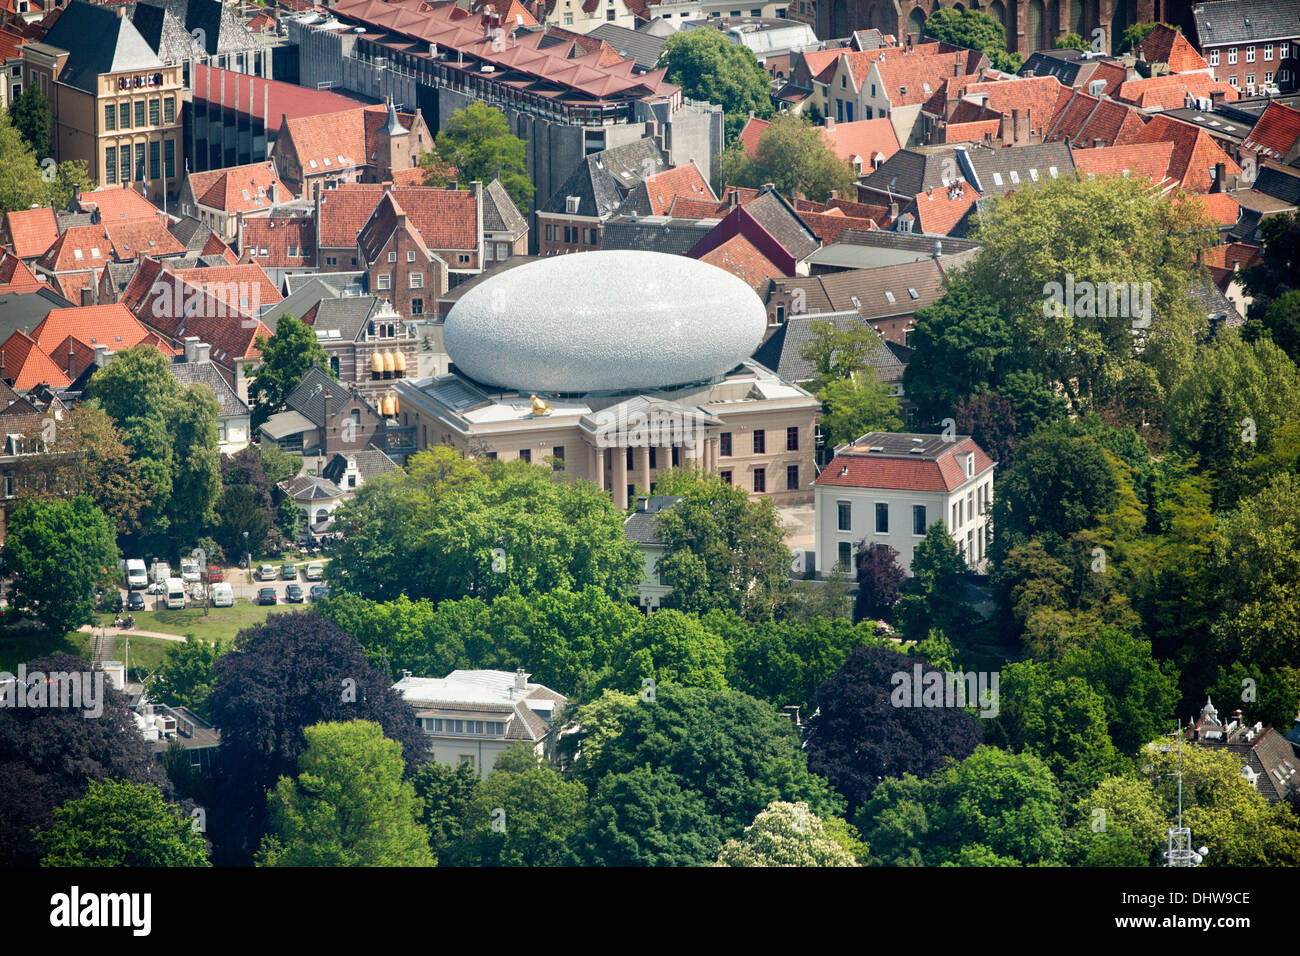 Holland, Zwolle, centro città, museo de Fundatie, interno sul tetto sembra come sfera di rugby. Bierman Henket architecten. Antenna Foto Stock